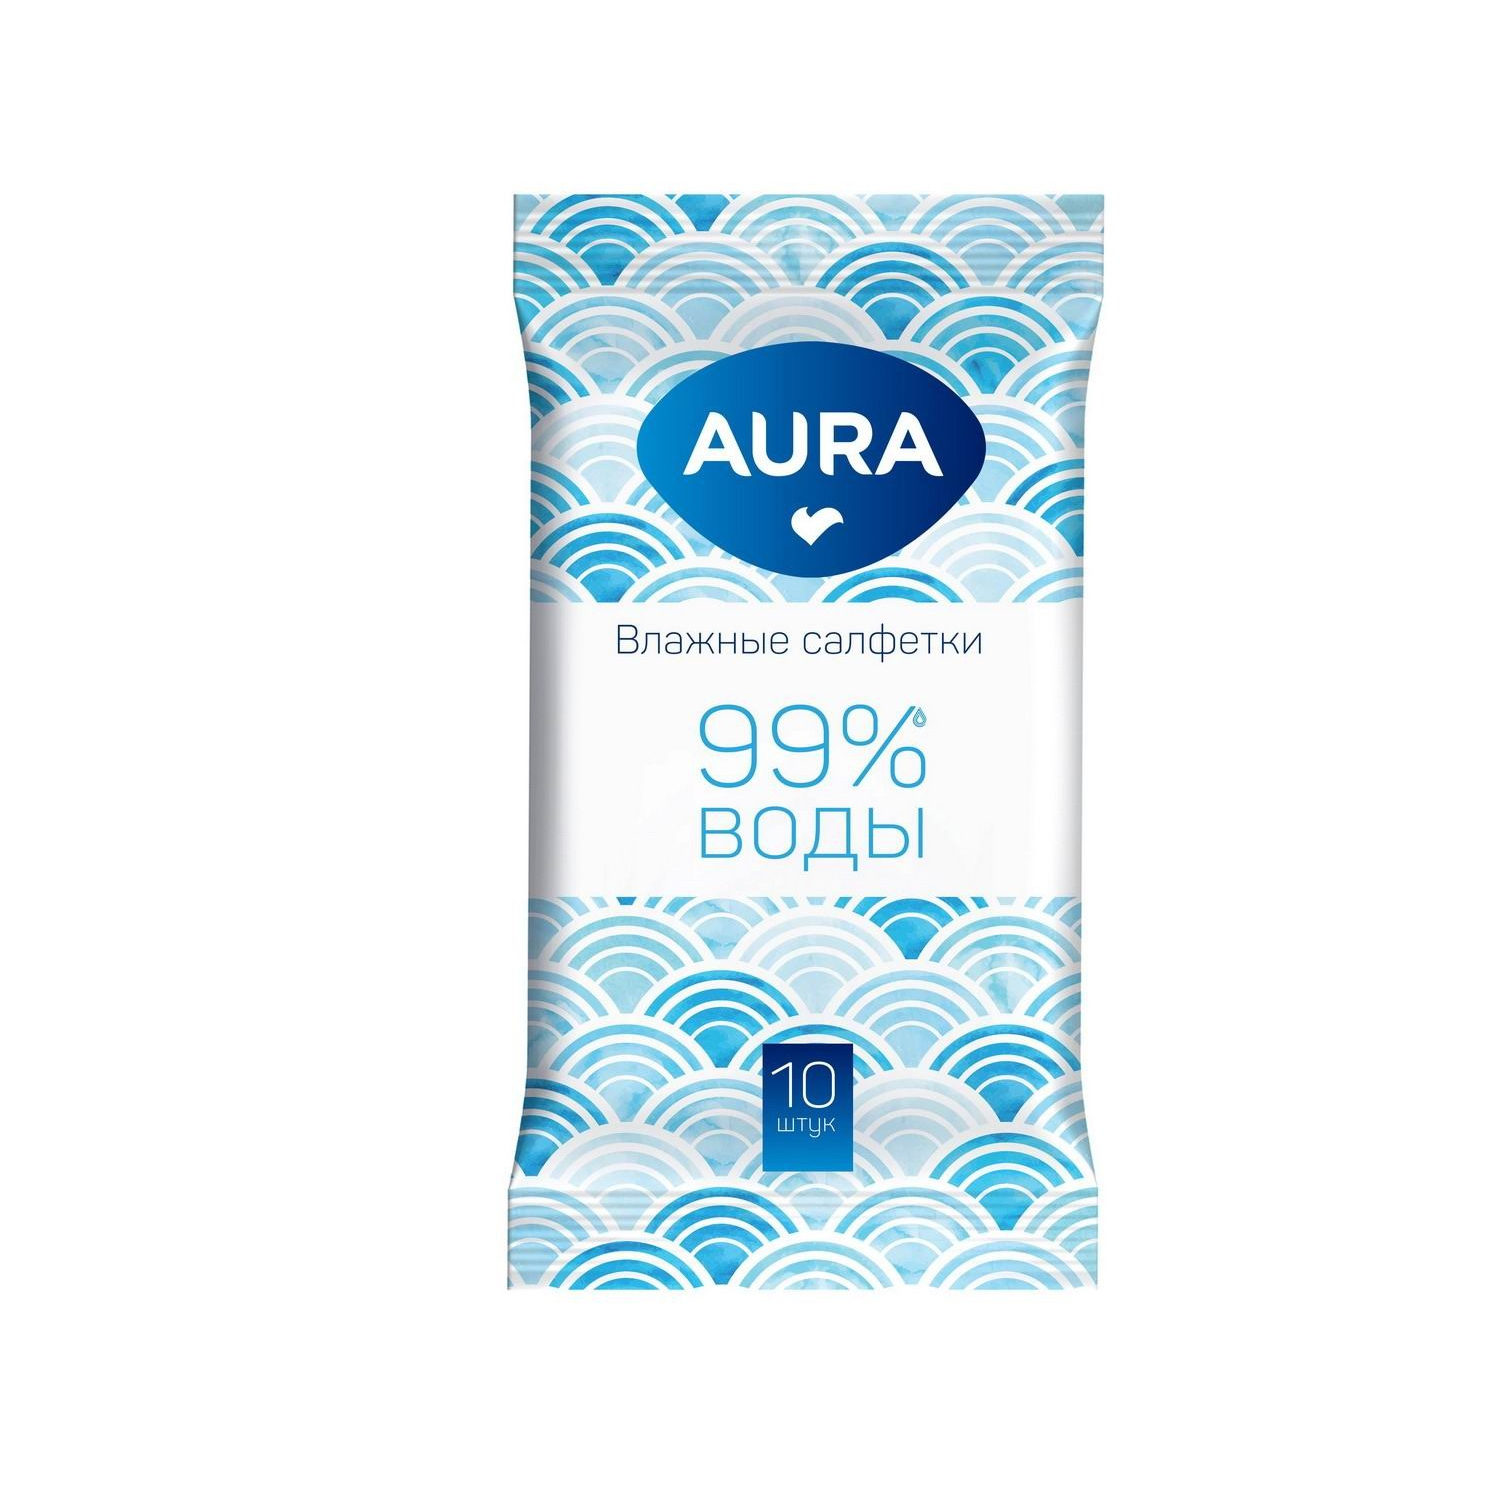 Салфетки влажные AURA освежающие 10 шт салфетки влажные aura для всей семьи 63 шт в ассортименте